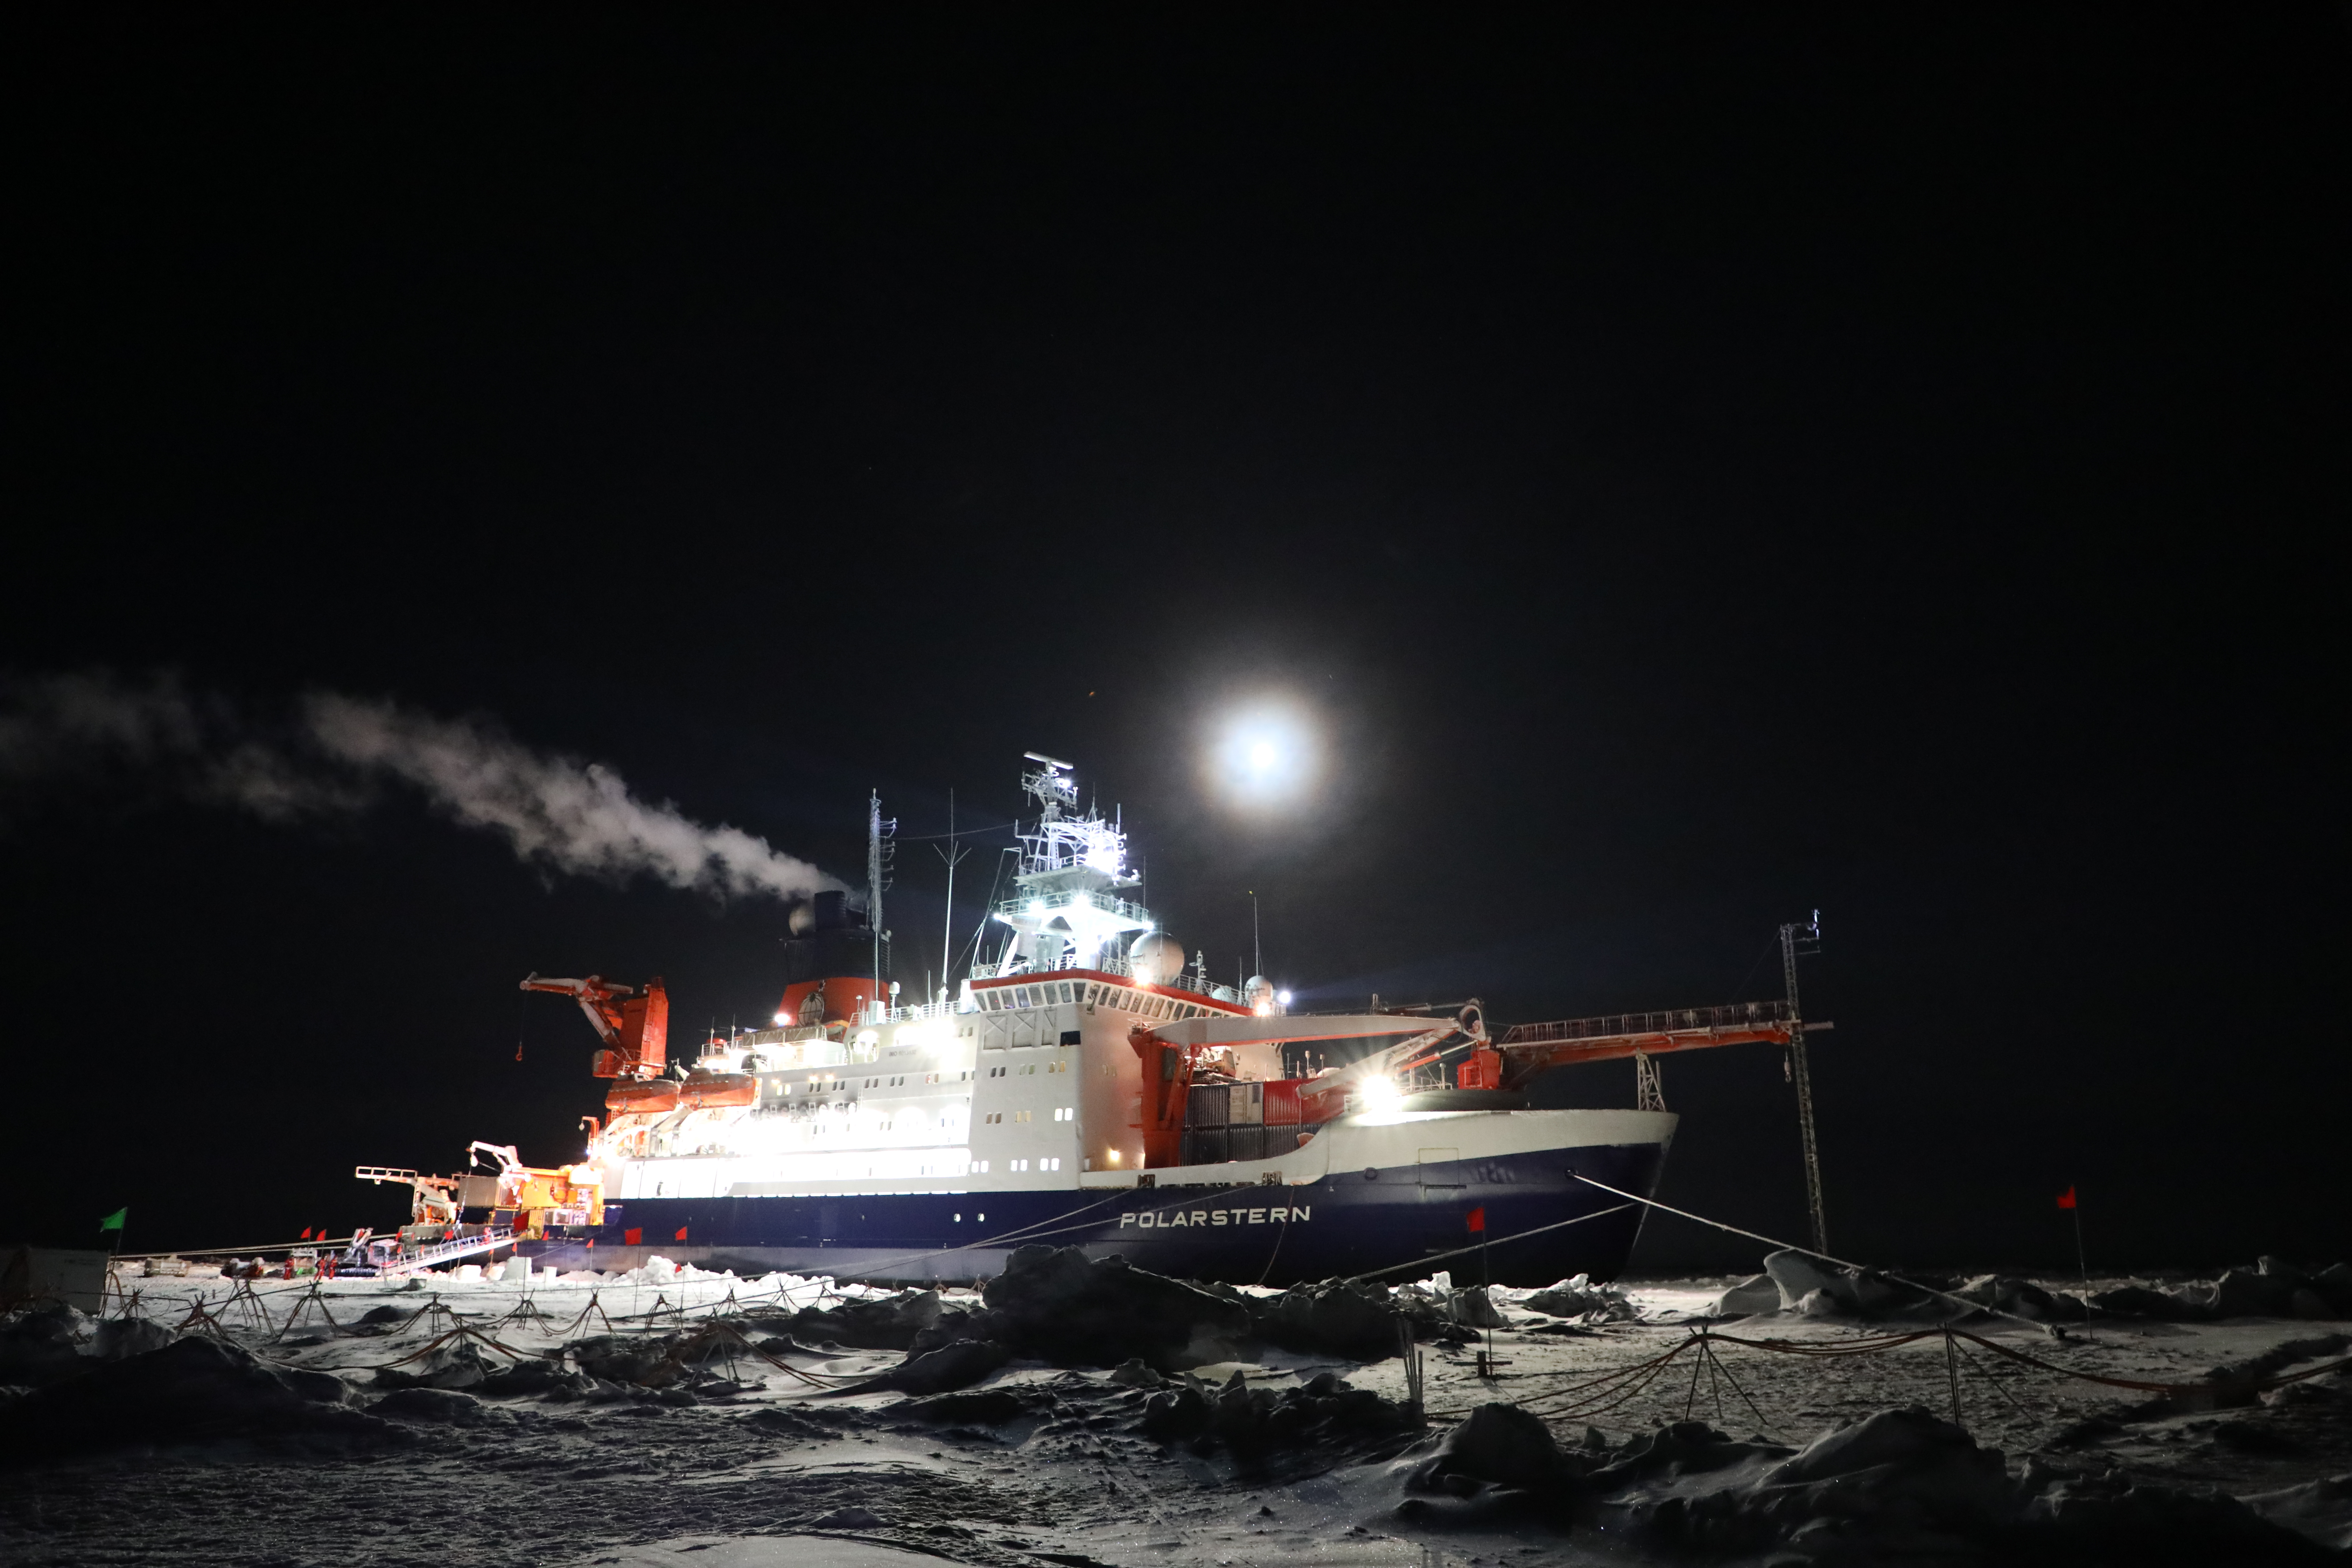 R/V Polarstern icebreaker during MOSAiC